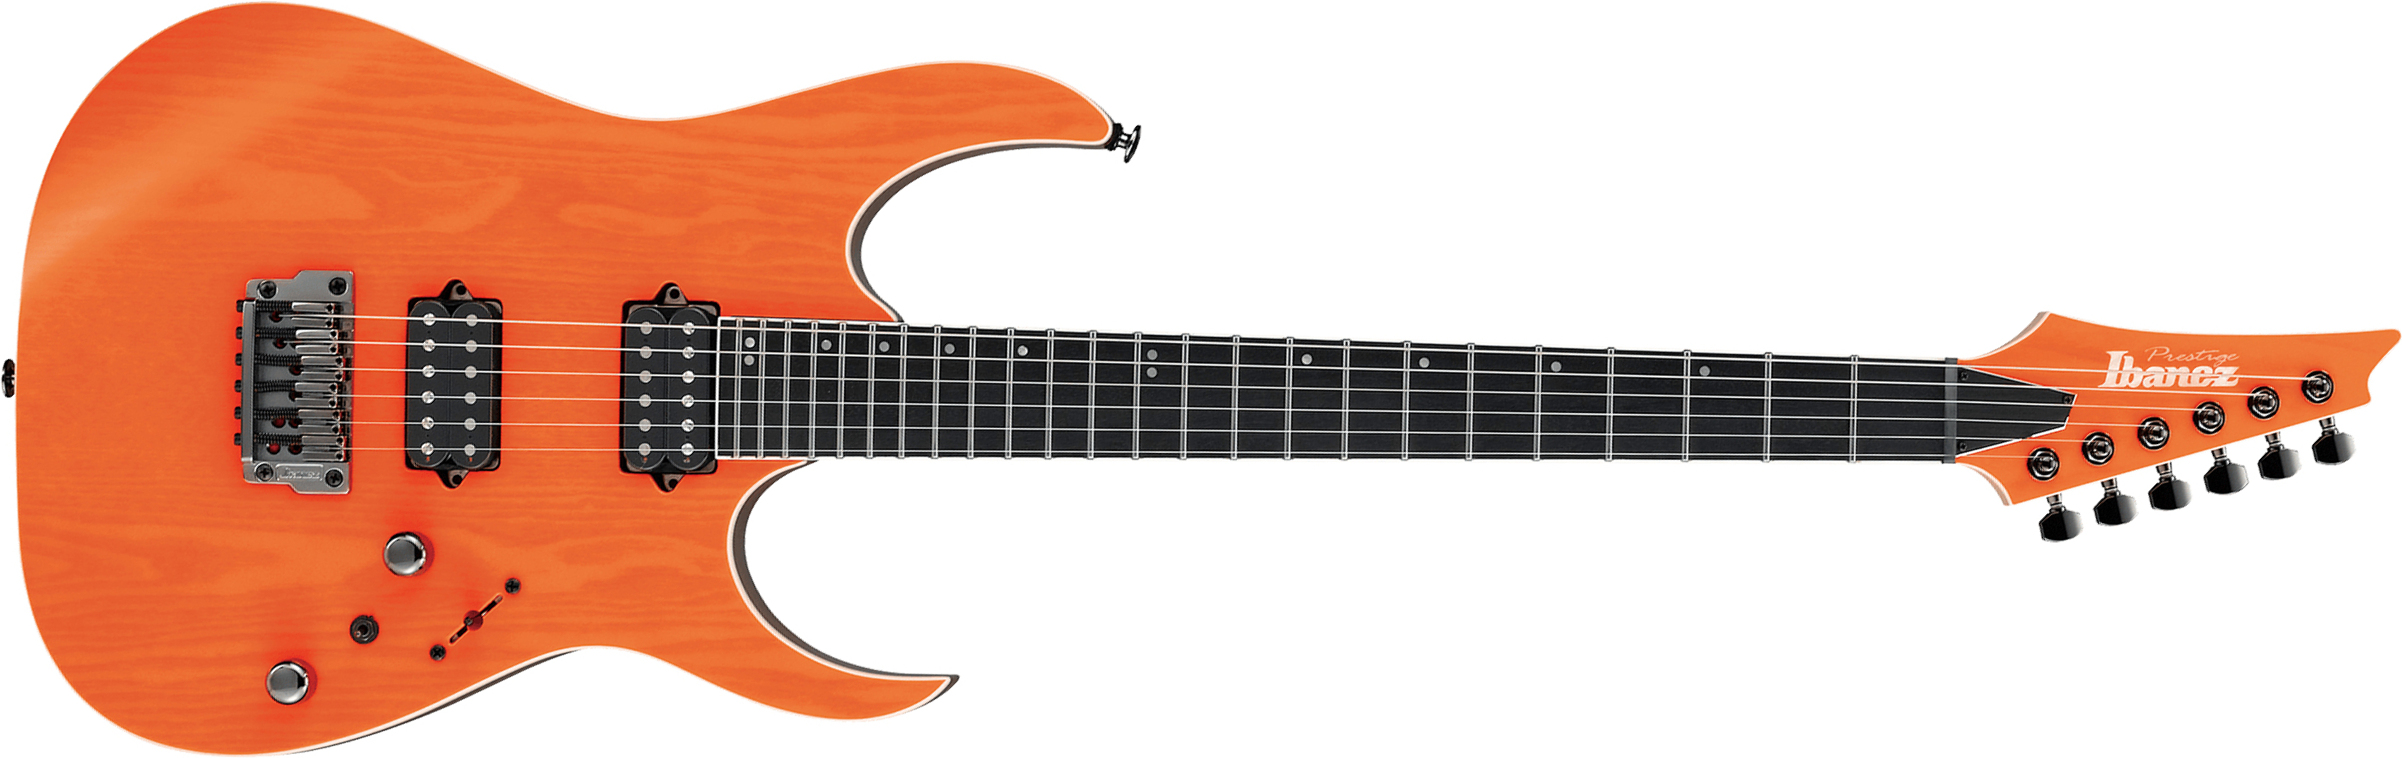 Ibanez Rgr5221 Tfr Prestige Jap Ht Bare Knuckle Hh Eb - Transparent Fluorescent Orange - E-Gitarre in Str-Form - Main picture